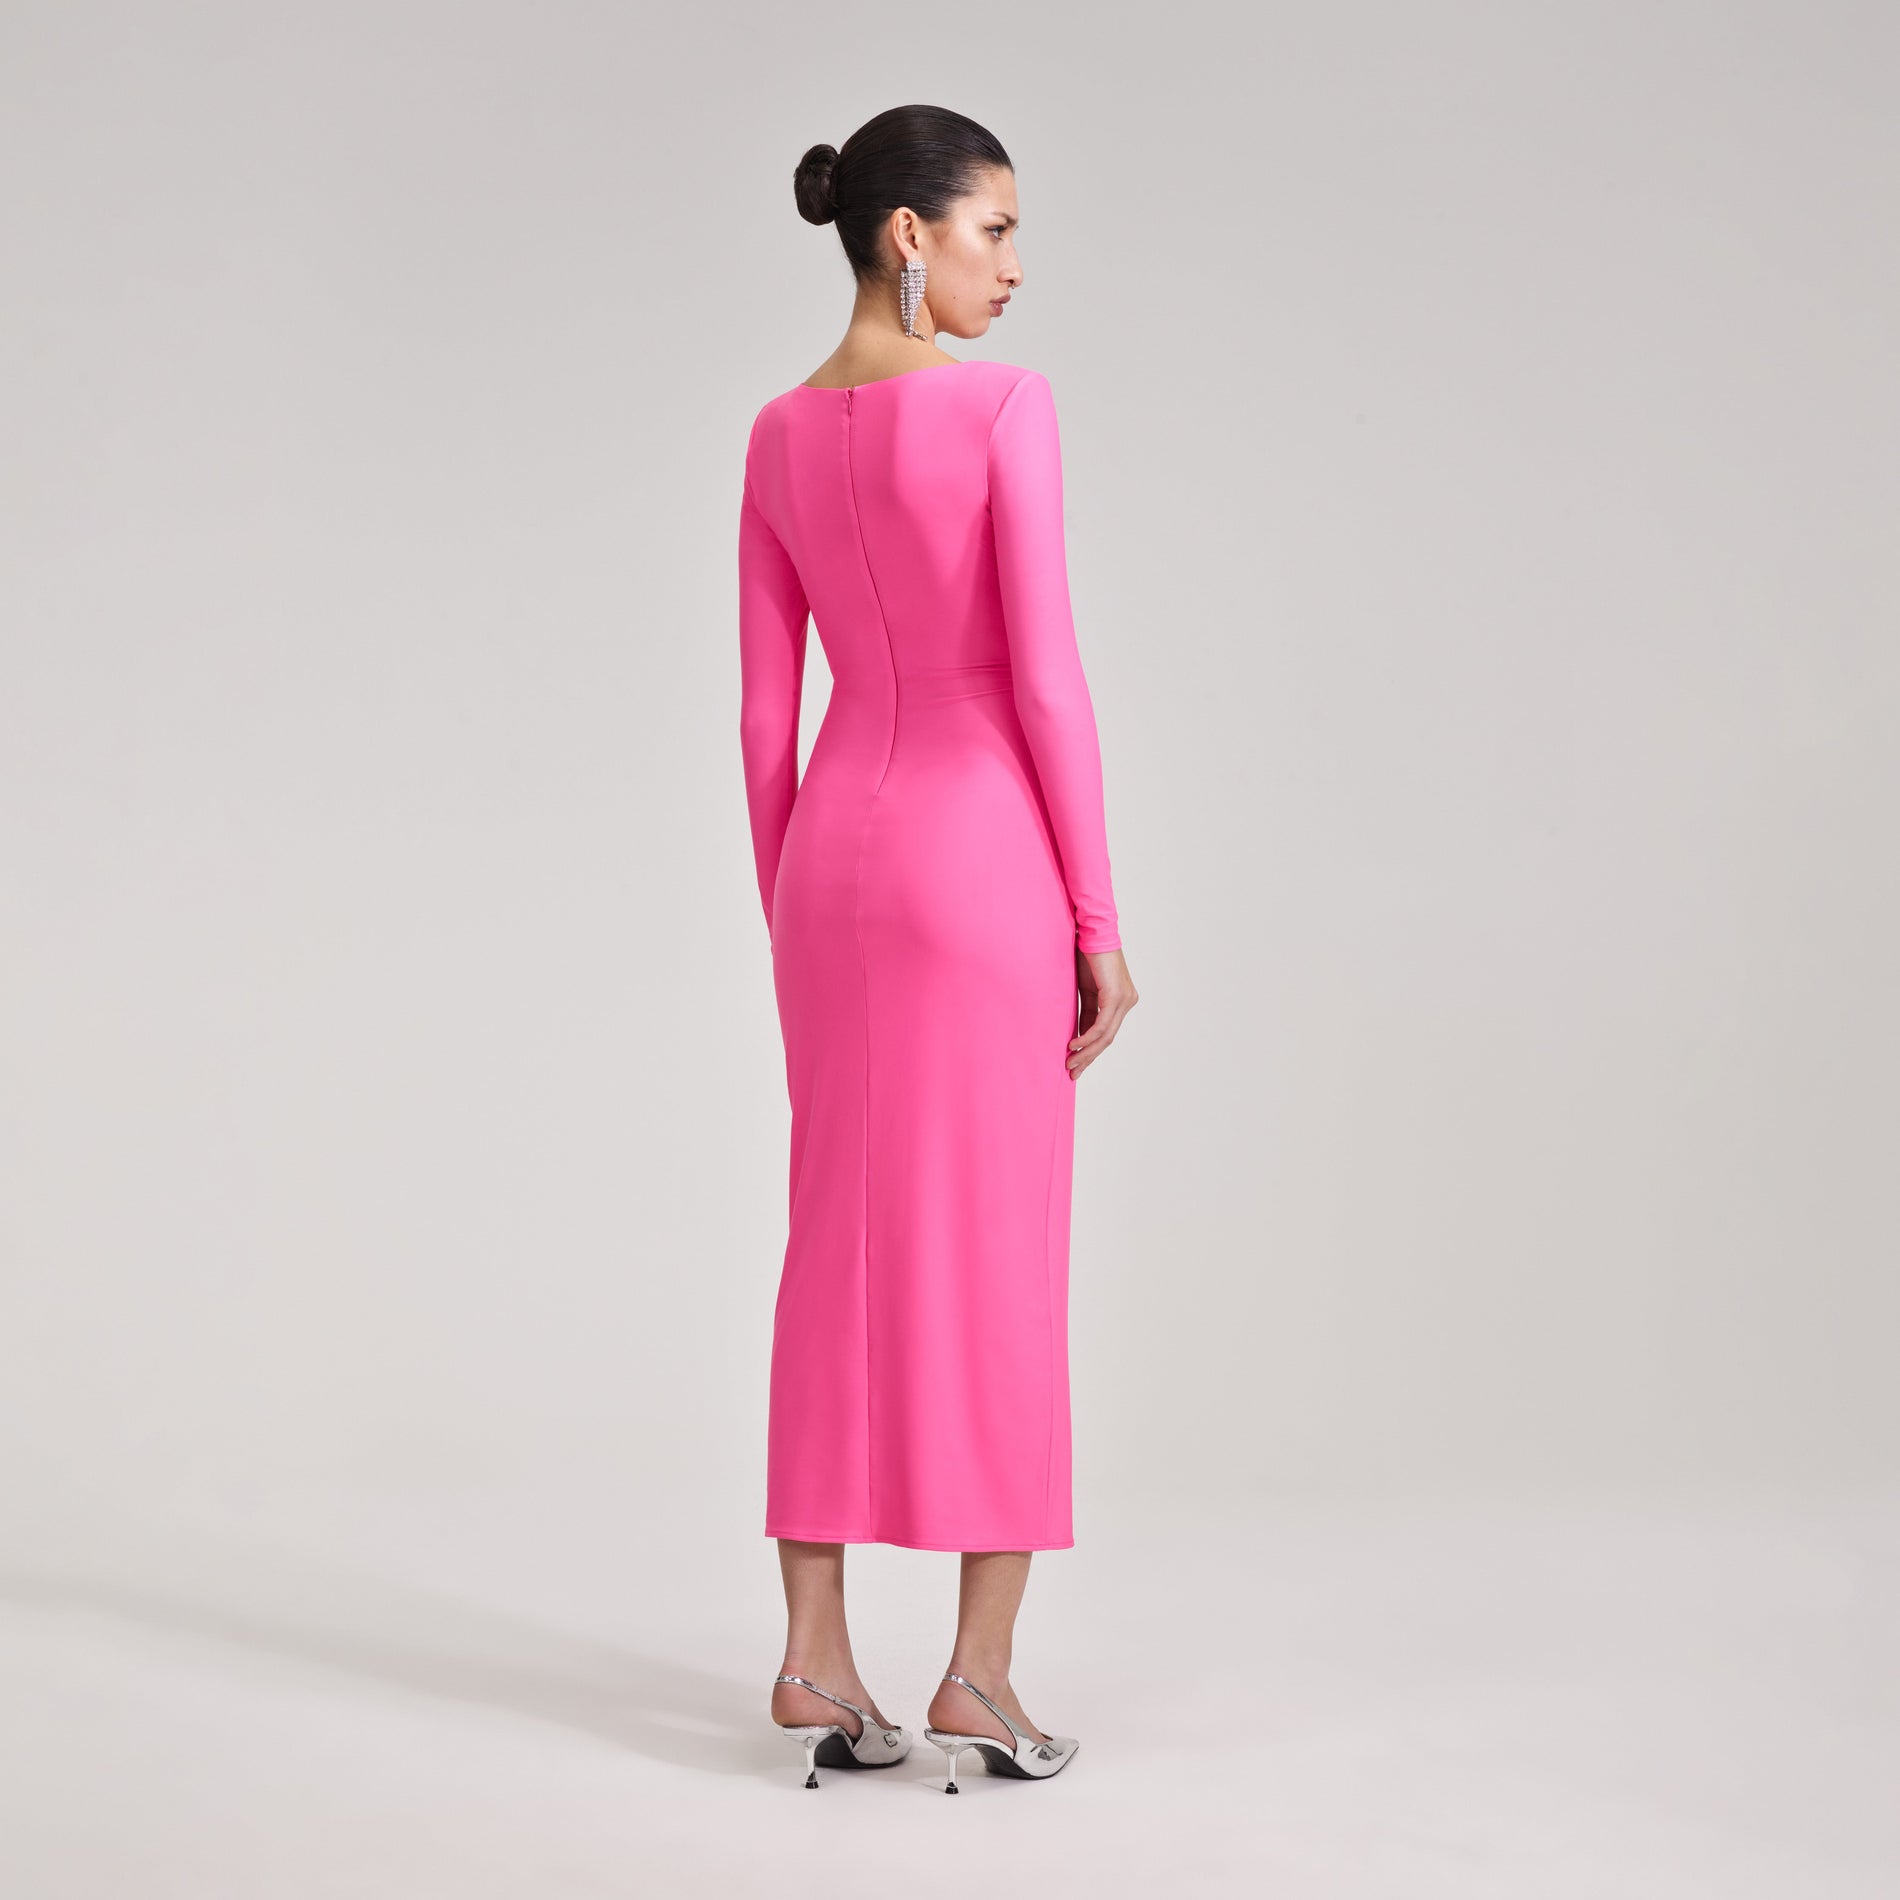 A woman wearing the Pink Jersey Midi Dress